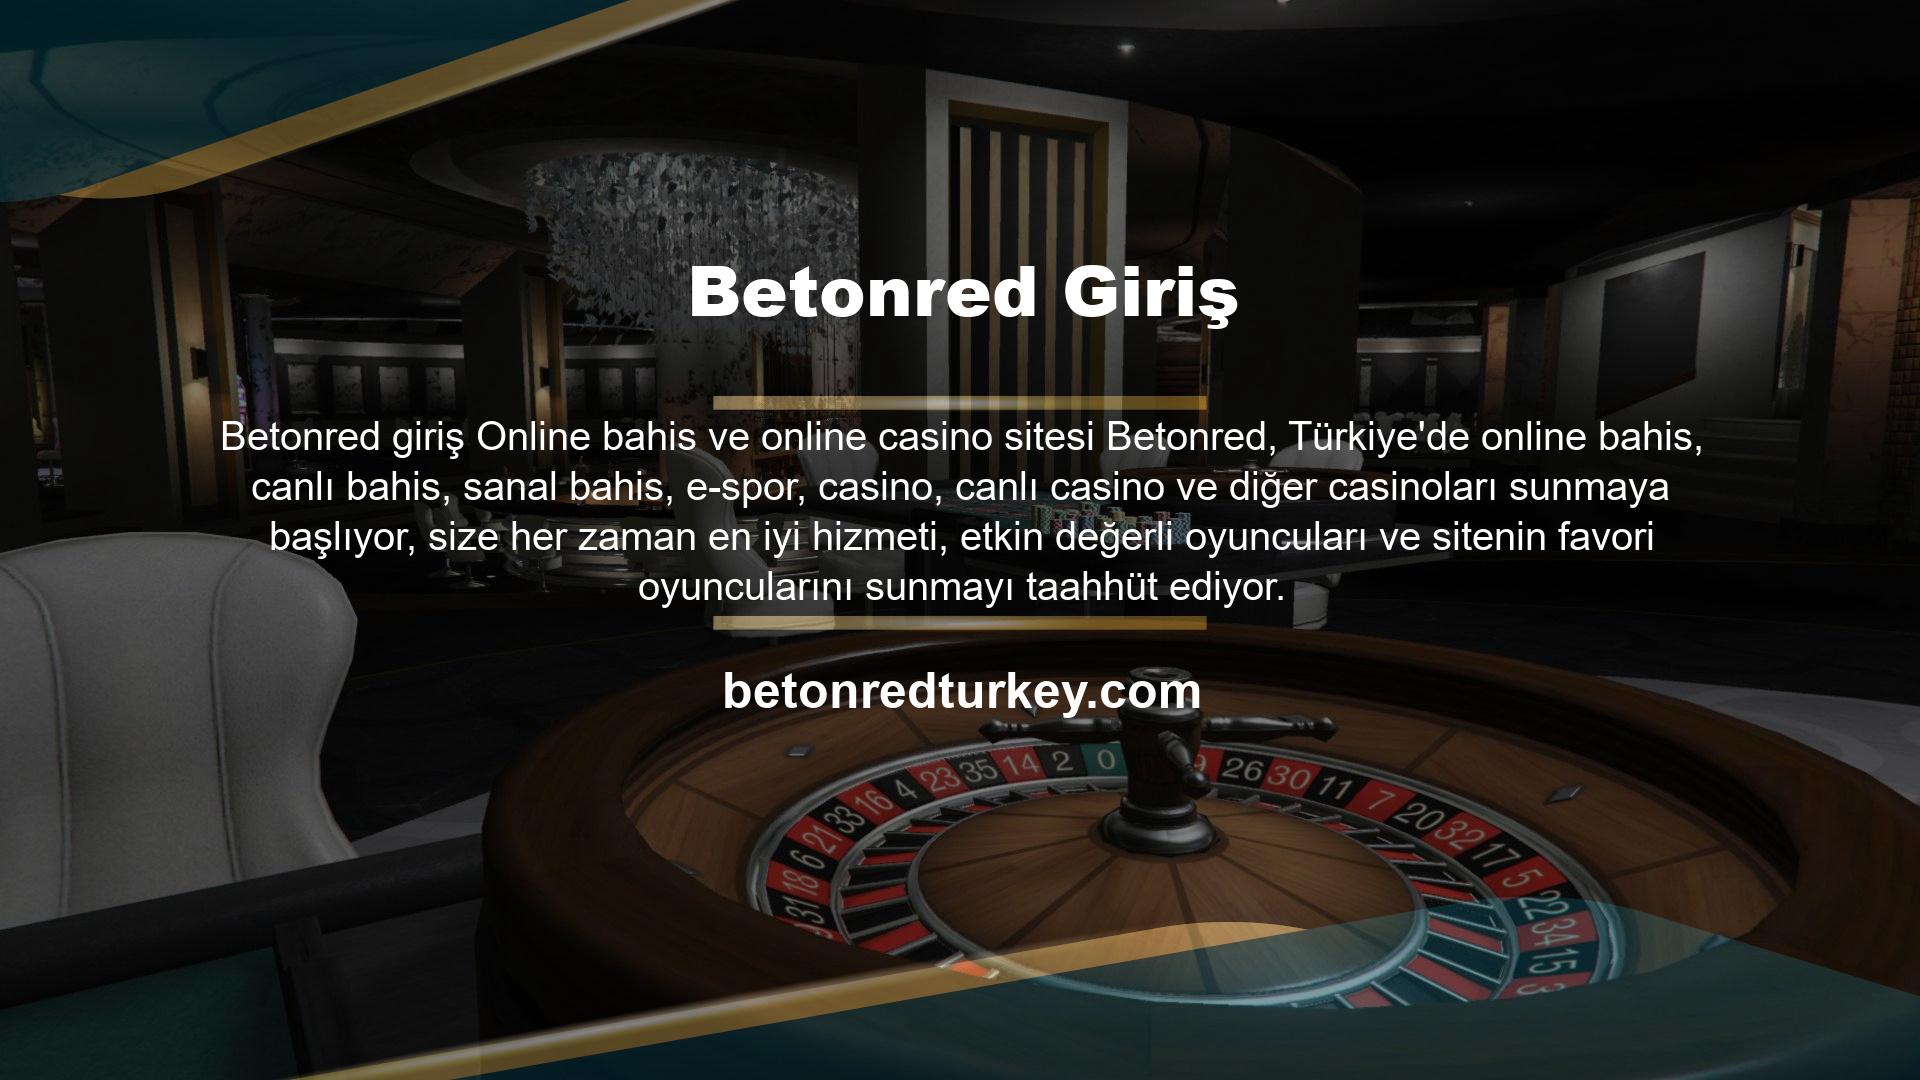 Online casino ve online casino sitesi Betonred, Türk oyunculara yönelik şeffaf hizmet politikası ile uzun yıllardır online casino ve casino sektöründe çalışan uzman kadrosu sayesinde oyuncu potansiyelini her geçen gün artırmakta ve oyuncularla yakın bir bağ sağlamaktadır